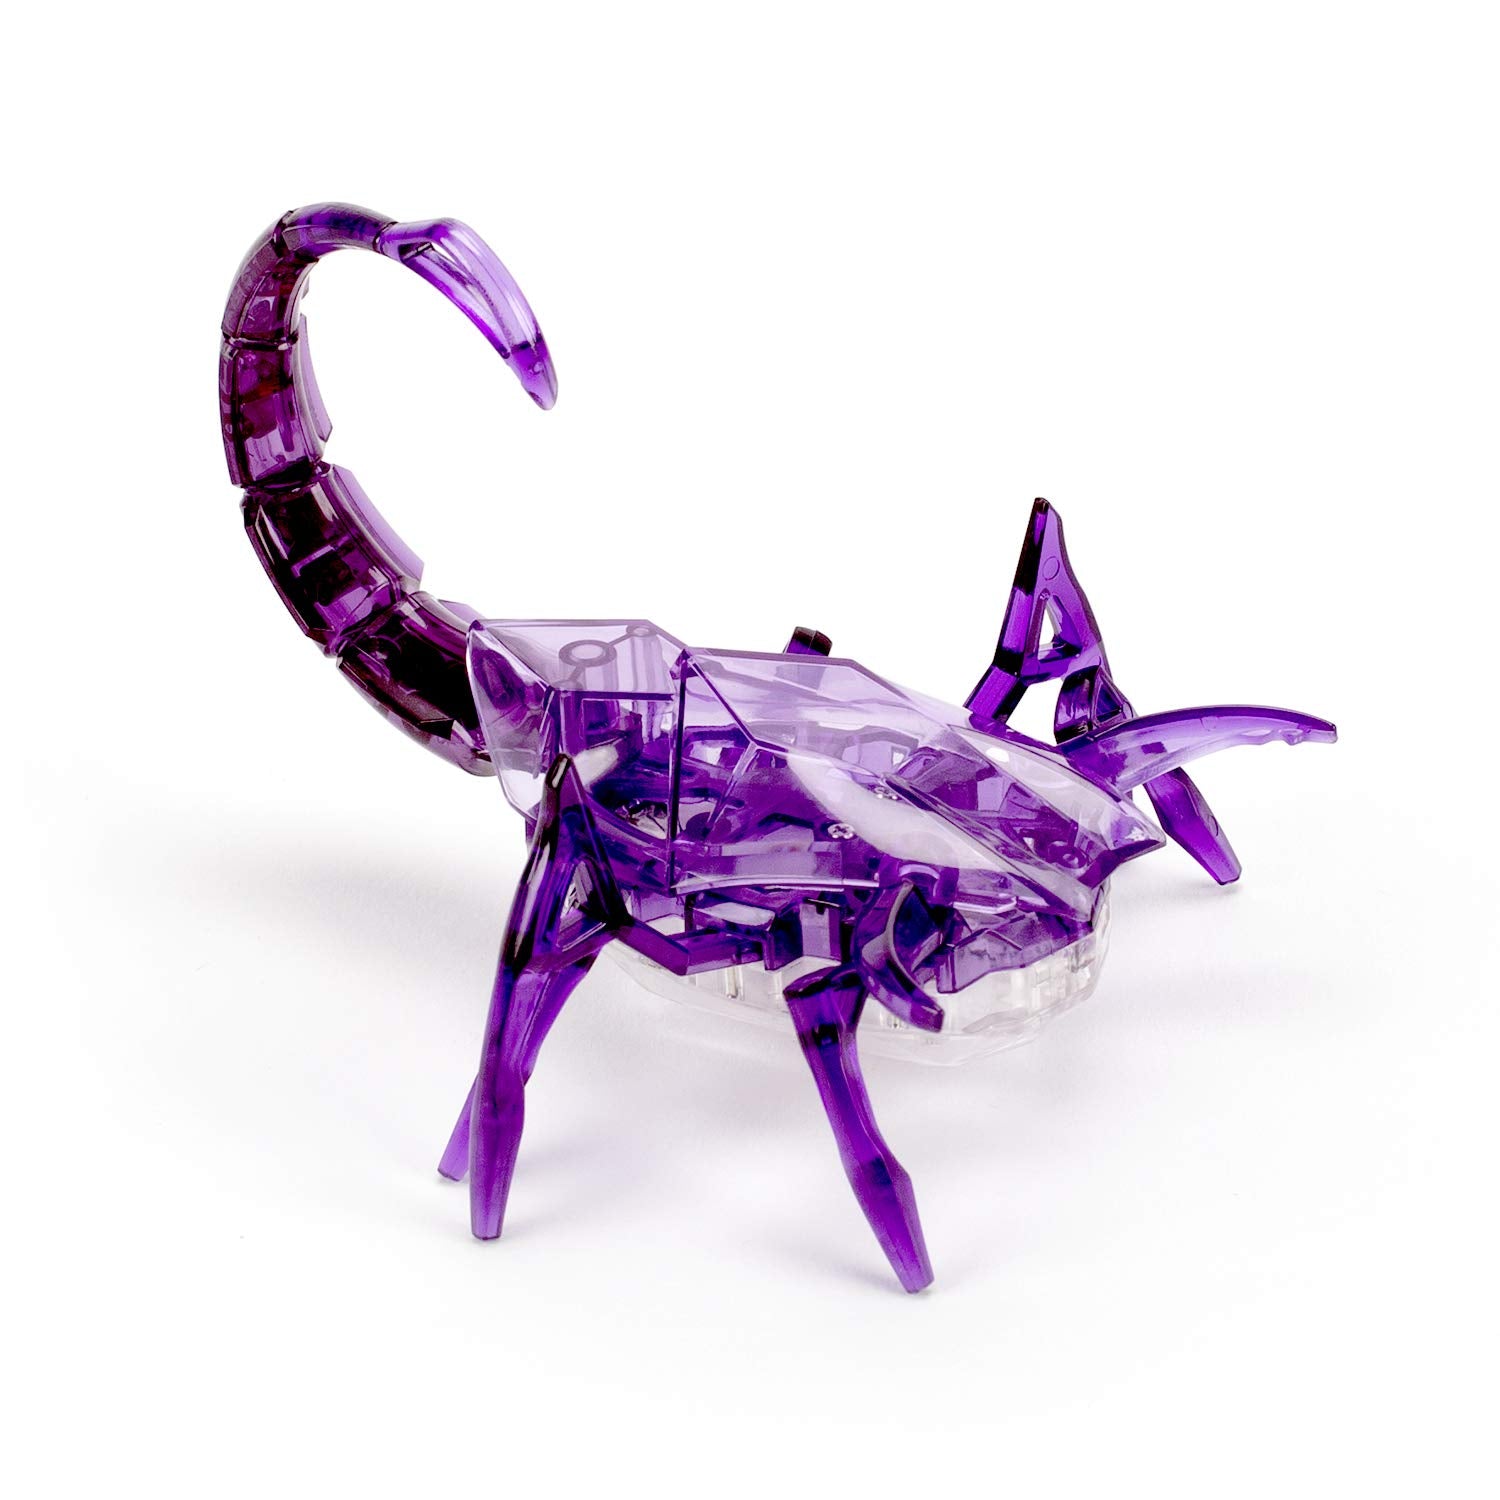 HEXBUG Scorpion, Electronic Autonomous Robotic Pet, Ages 8 and Up (Random Color)